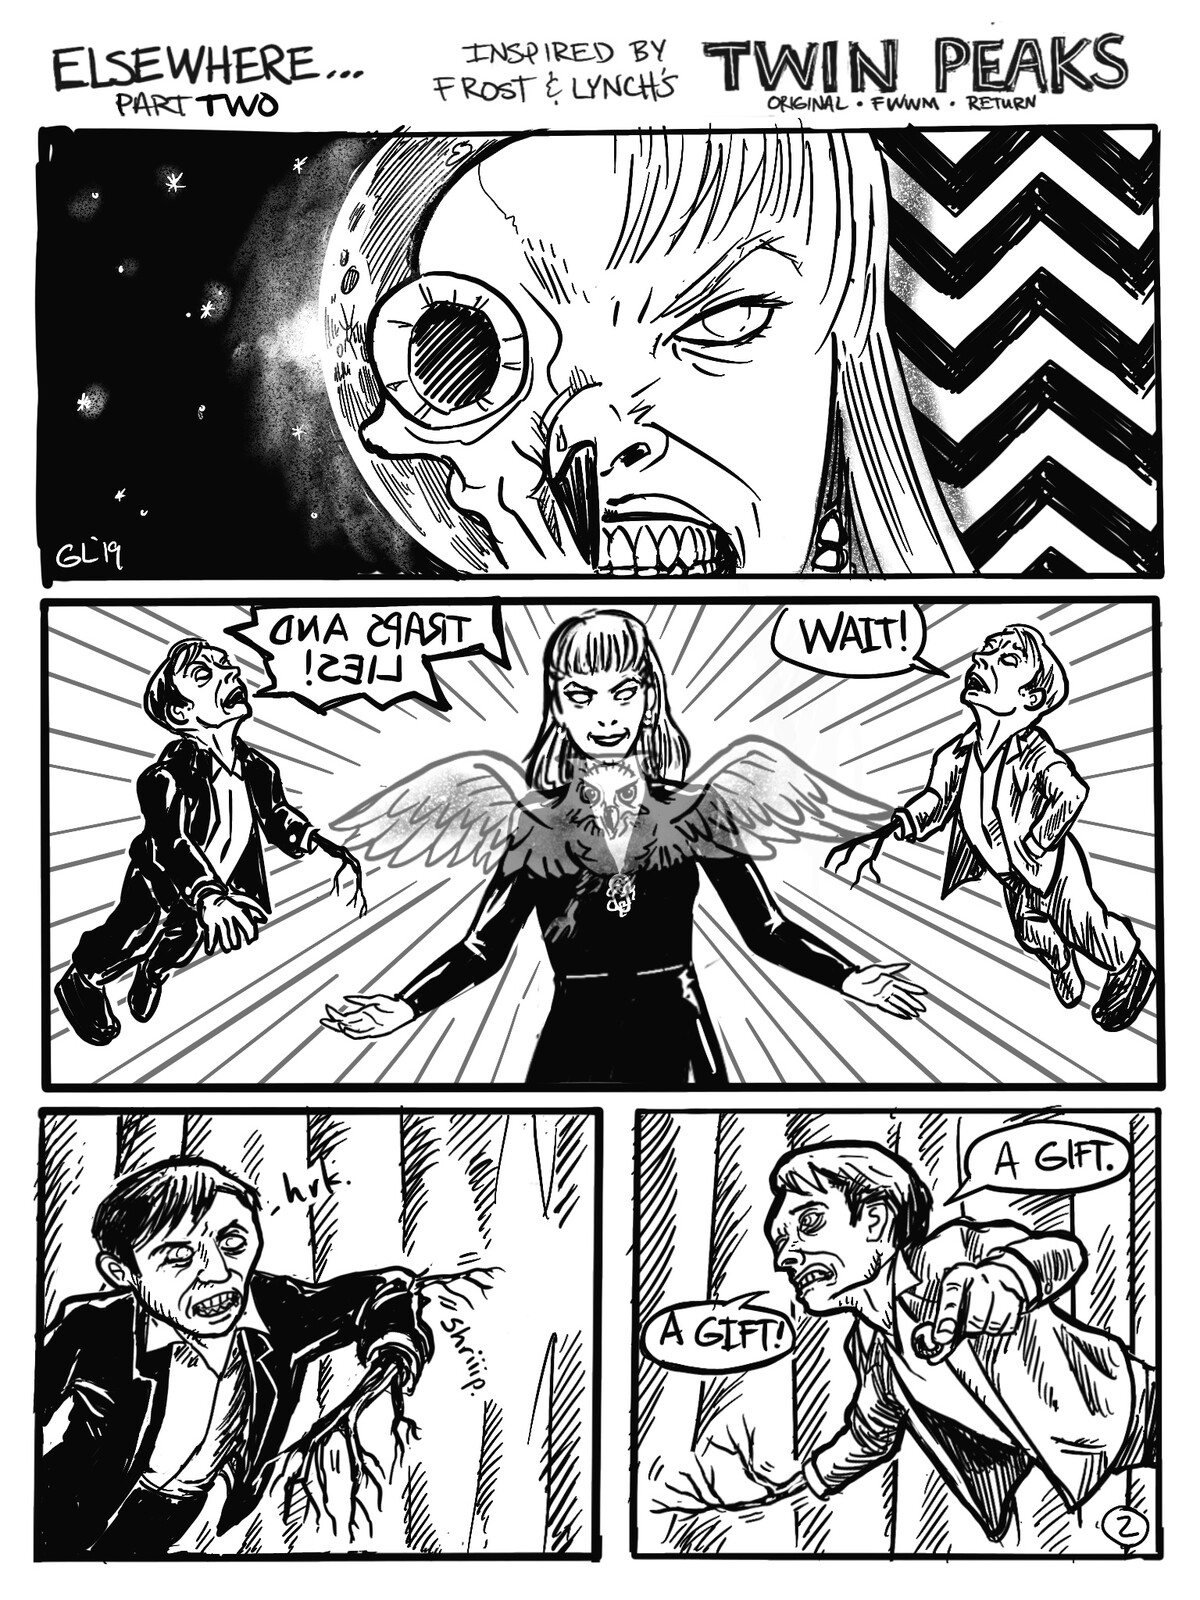 Twin Peaks: Elsewhere
A fan comic. Page 2